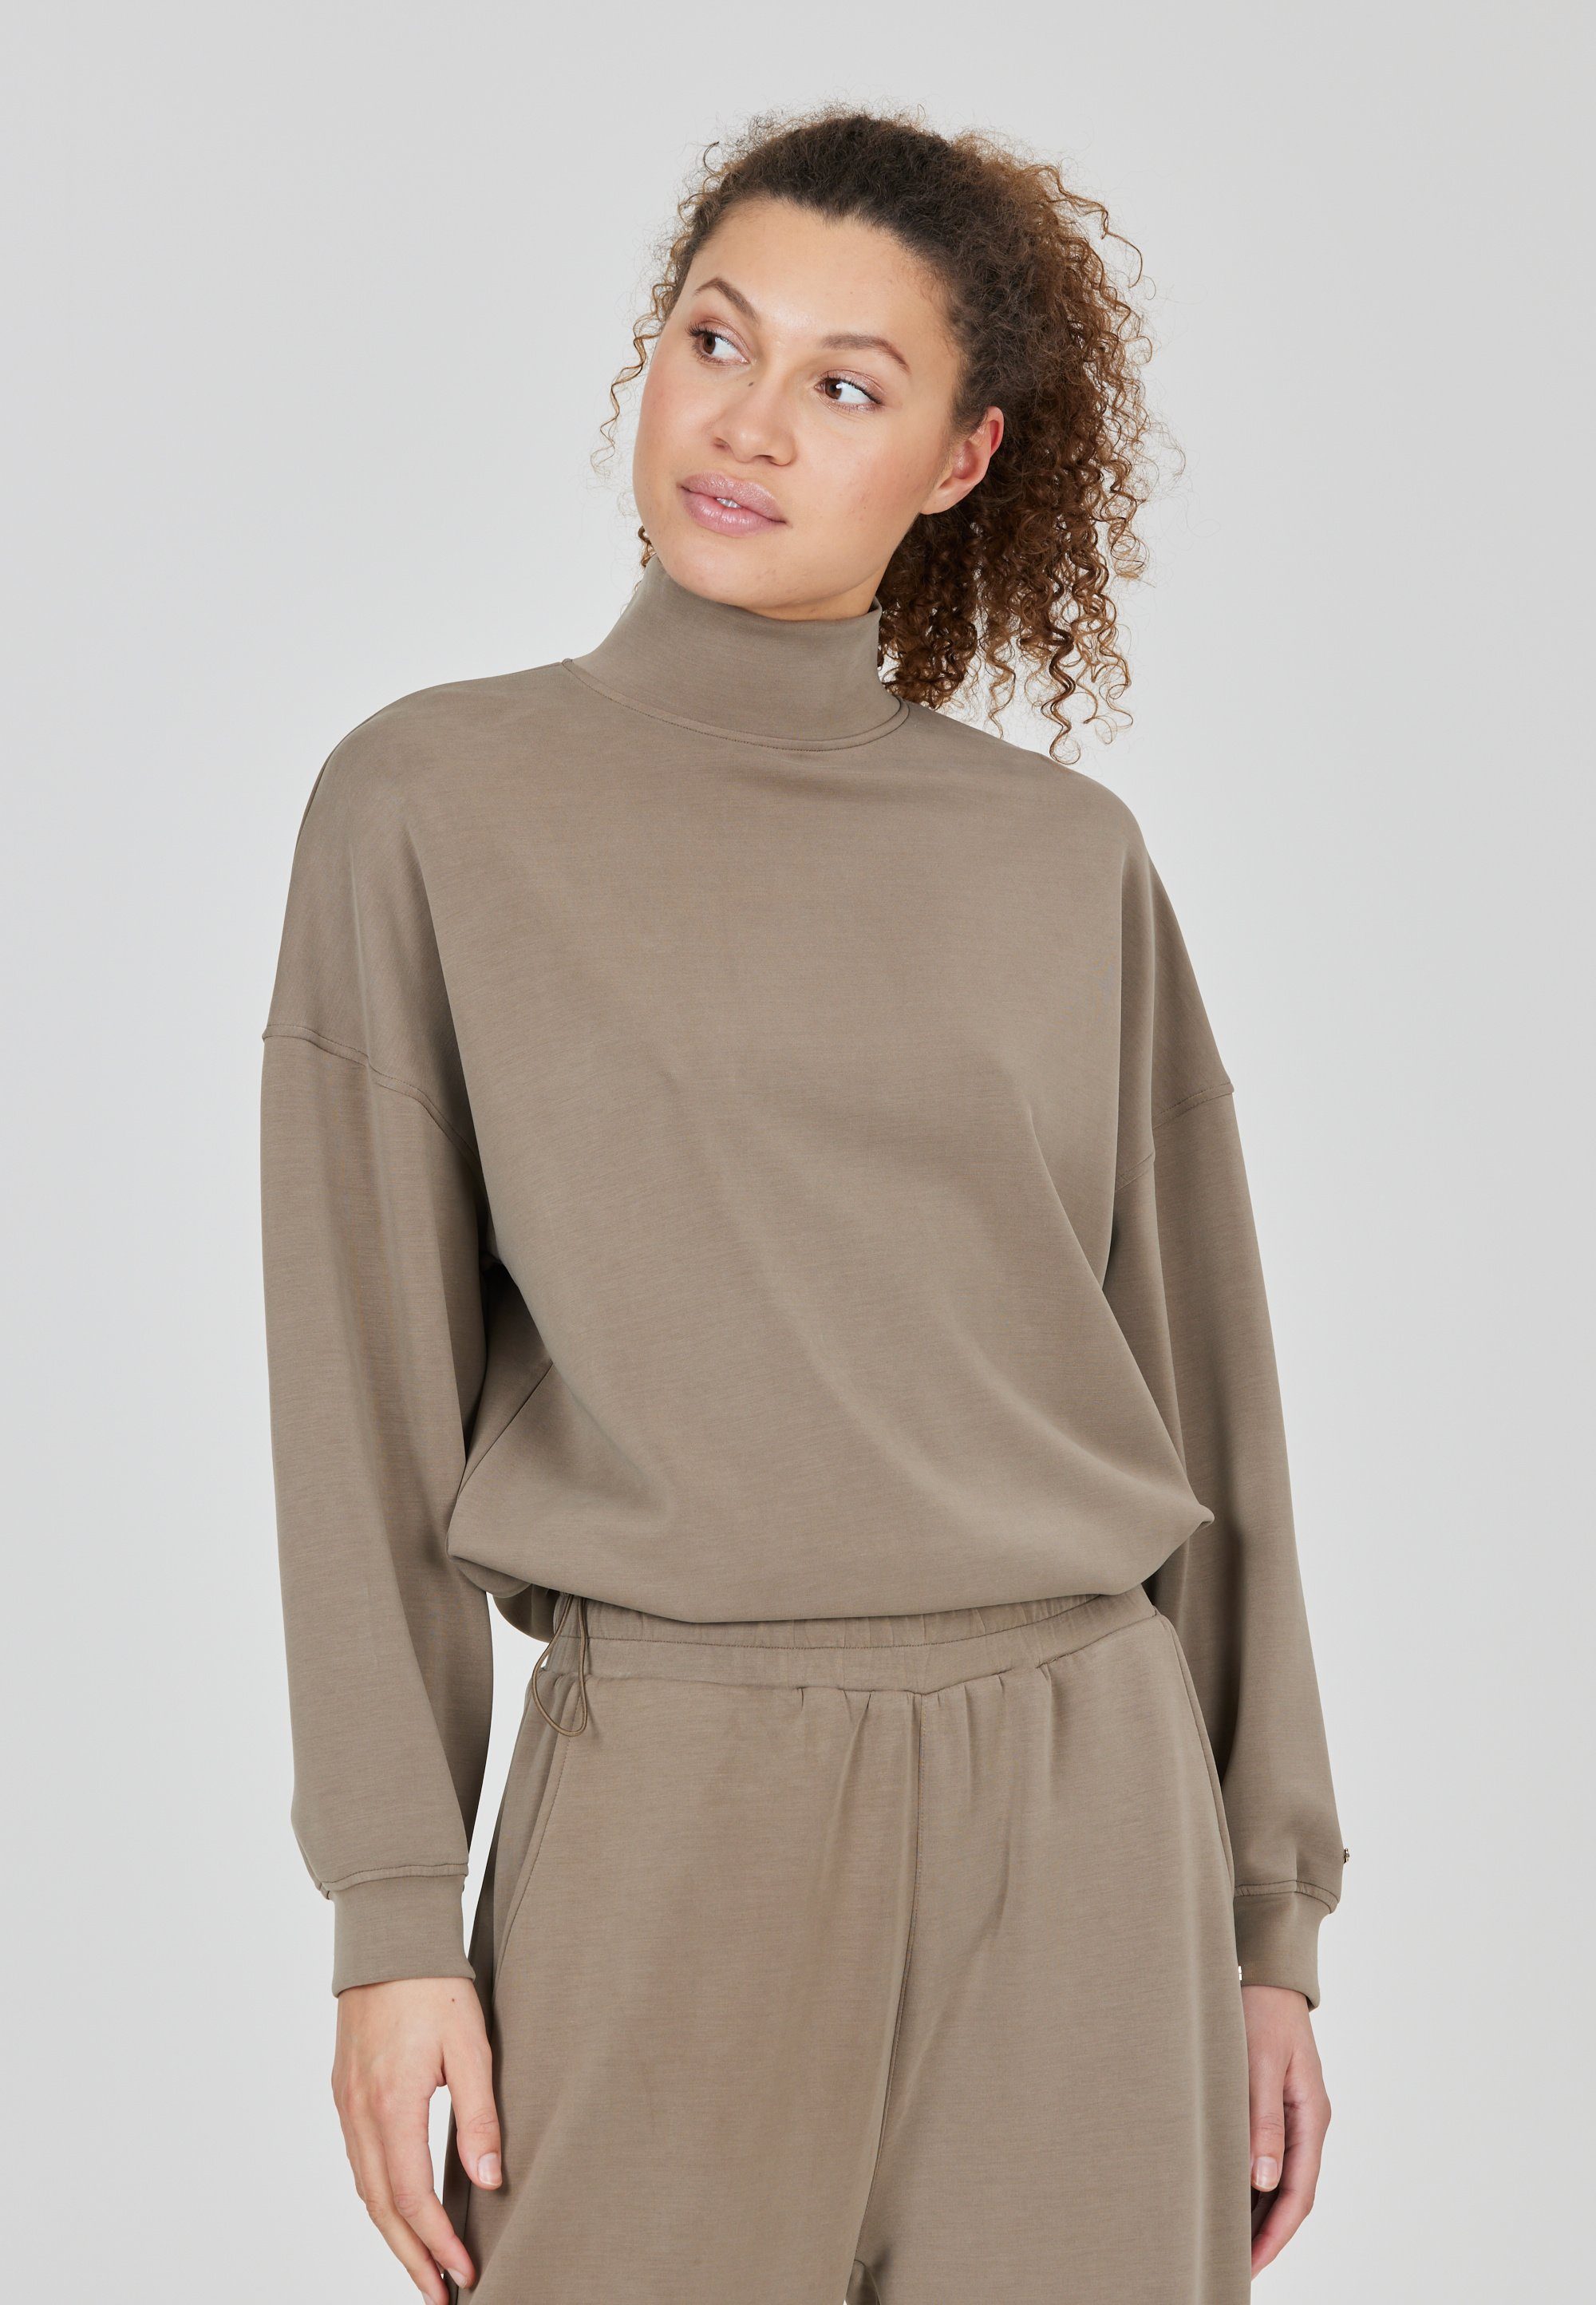 ATHLECIA Sweatshirt Paris mit hohem Kragen und Tragekomfort camelfarben